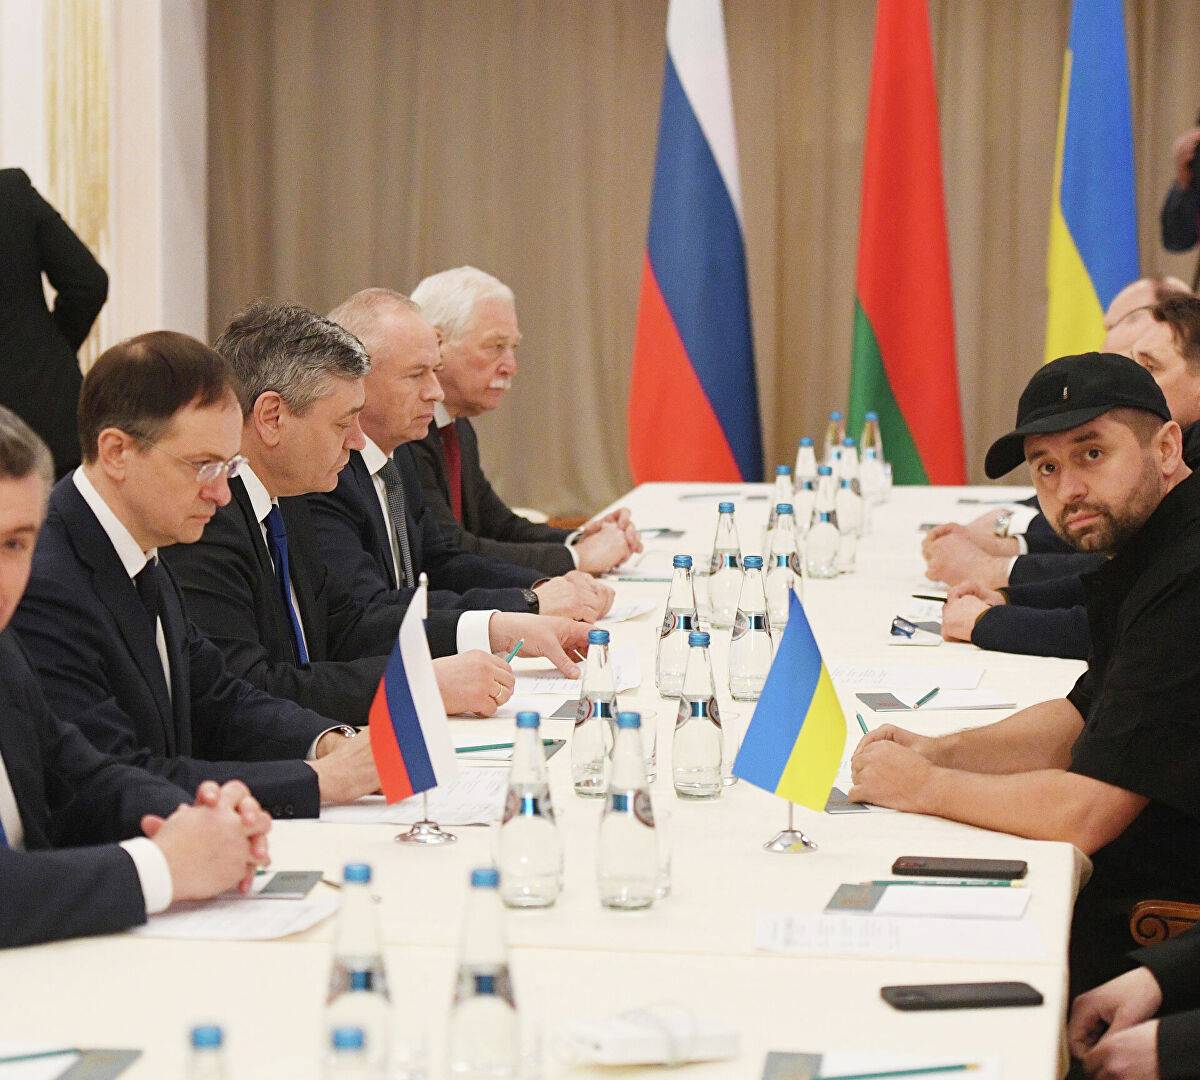 Надежда на взаимопонимание: эксперты о переговорах России и Украины